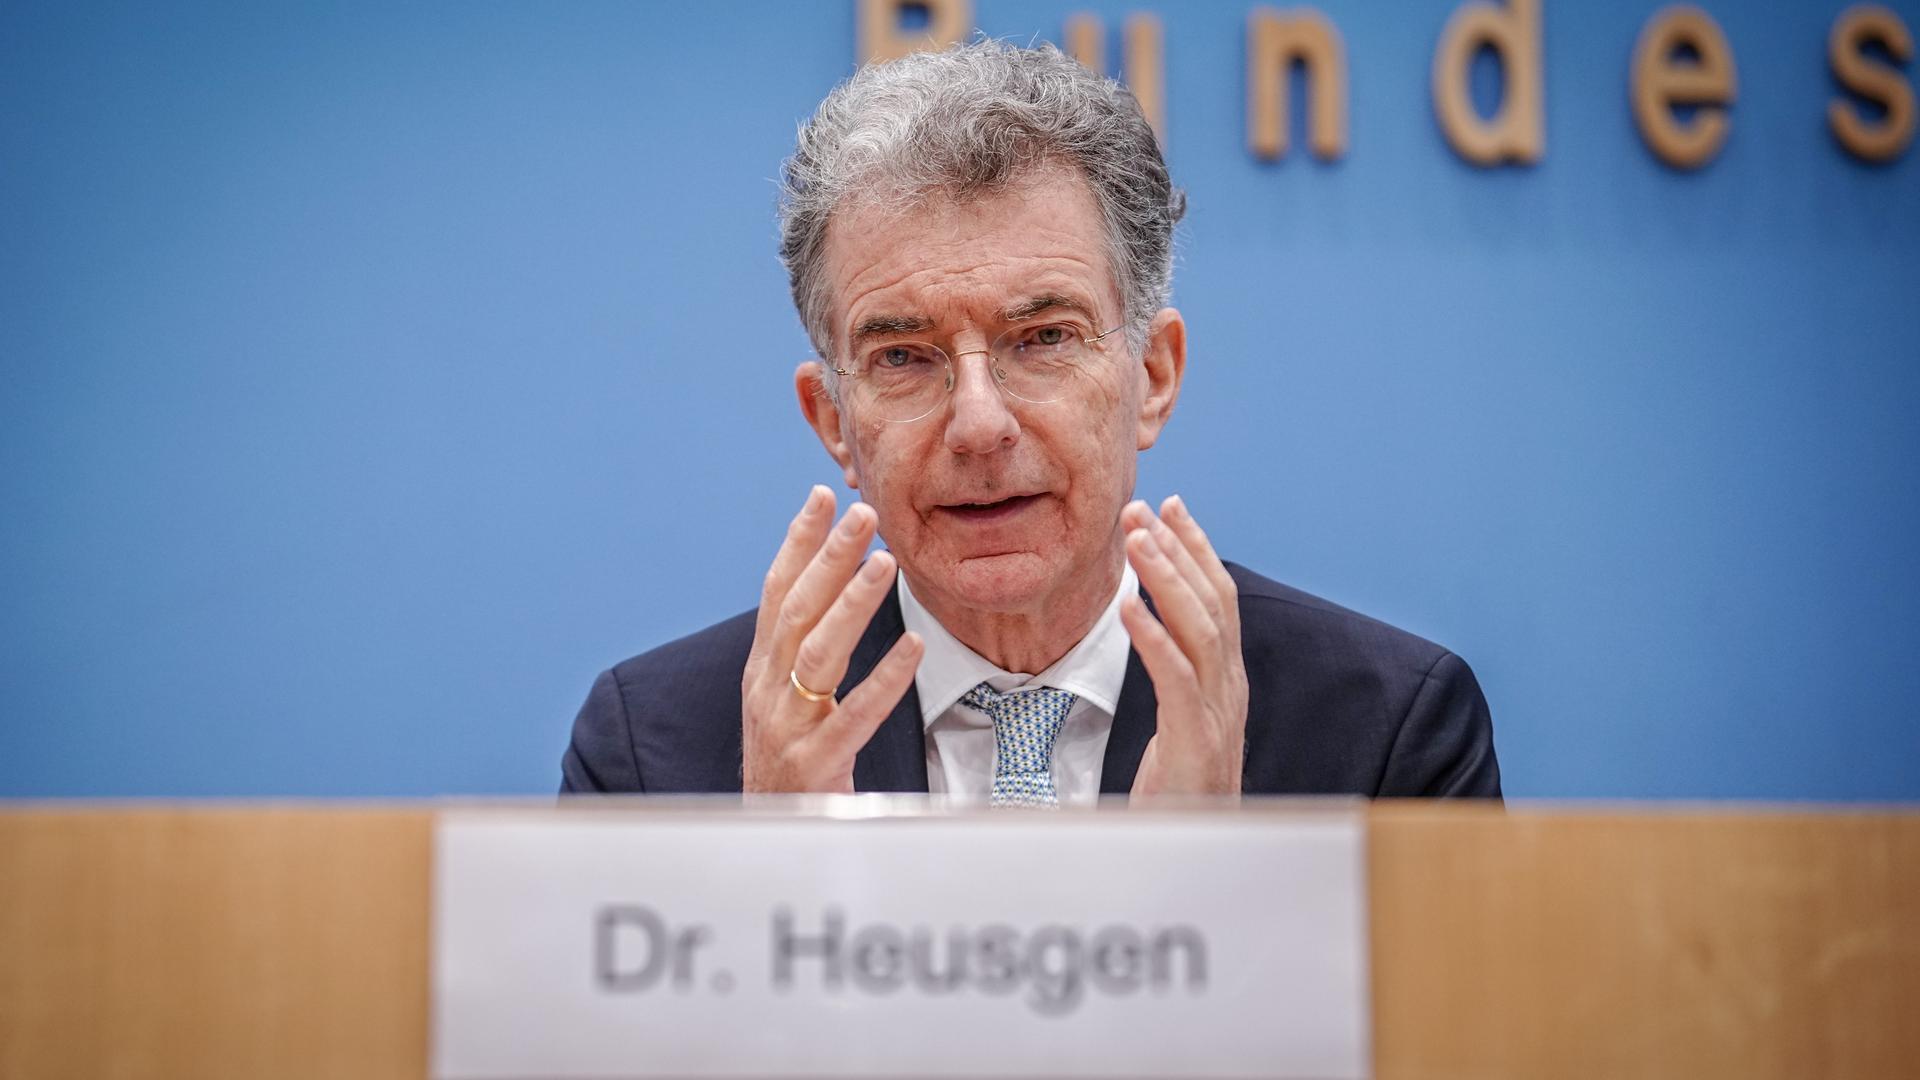 Christoph Heusgen, Vorsitzender der Münchner Sicherheitskonferenz (MSC) und früherer Botschafter, gibt eine Pressekonferenz zur bevorstehenden Konferenz